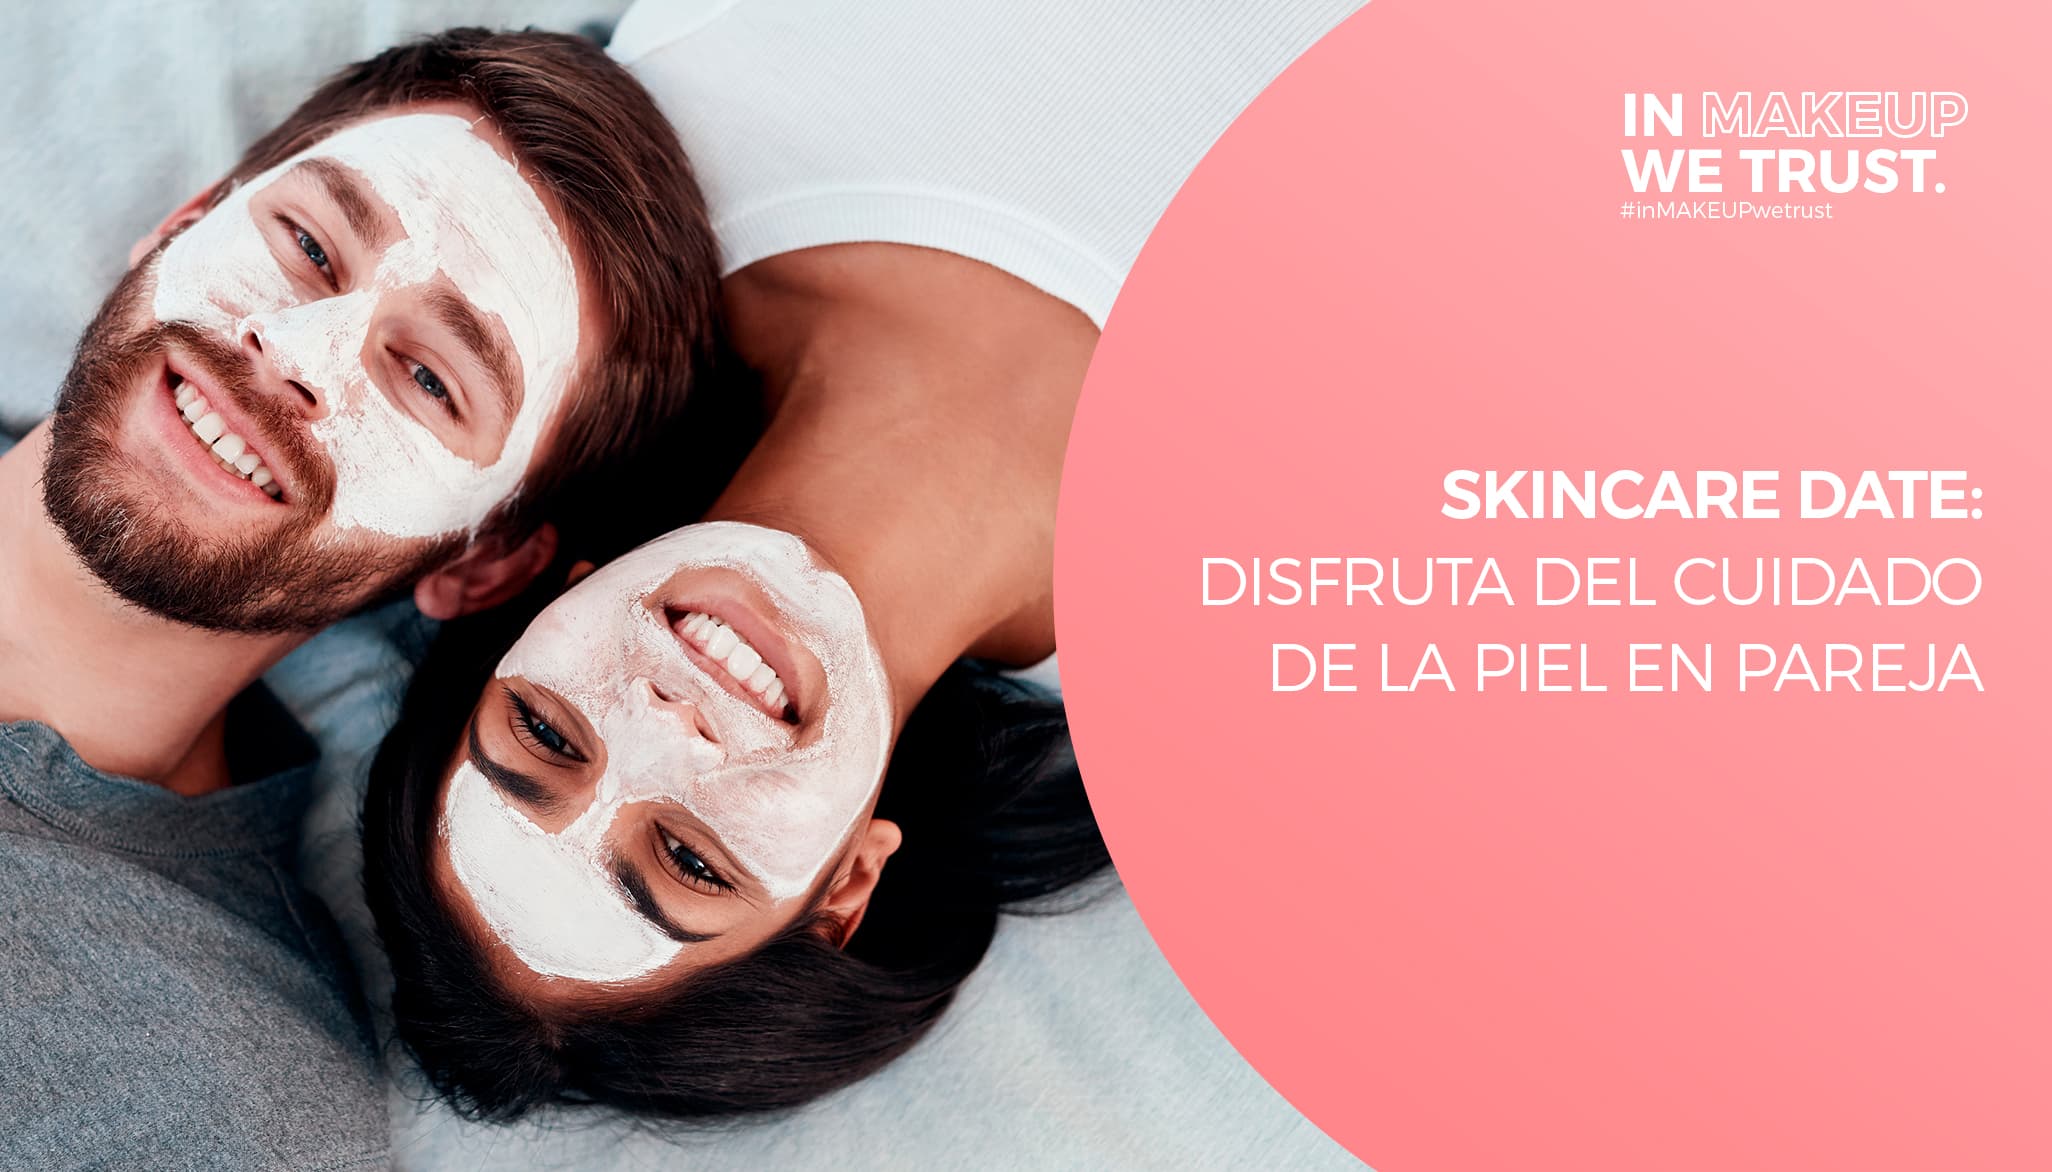 Skincare Date: Disfruta del cuidado de la piel en pareja